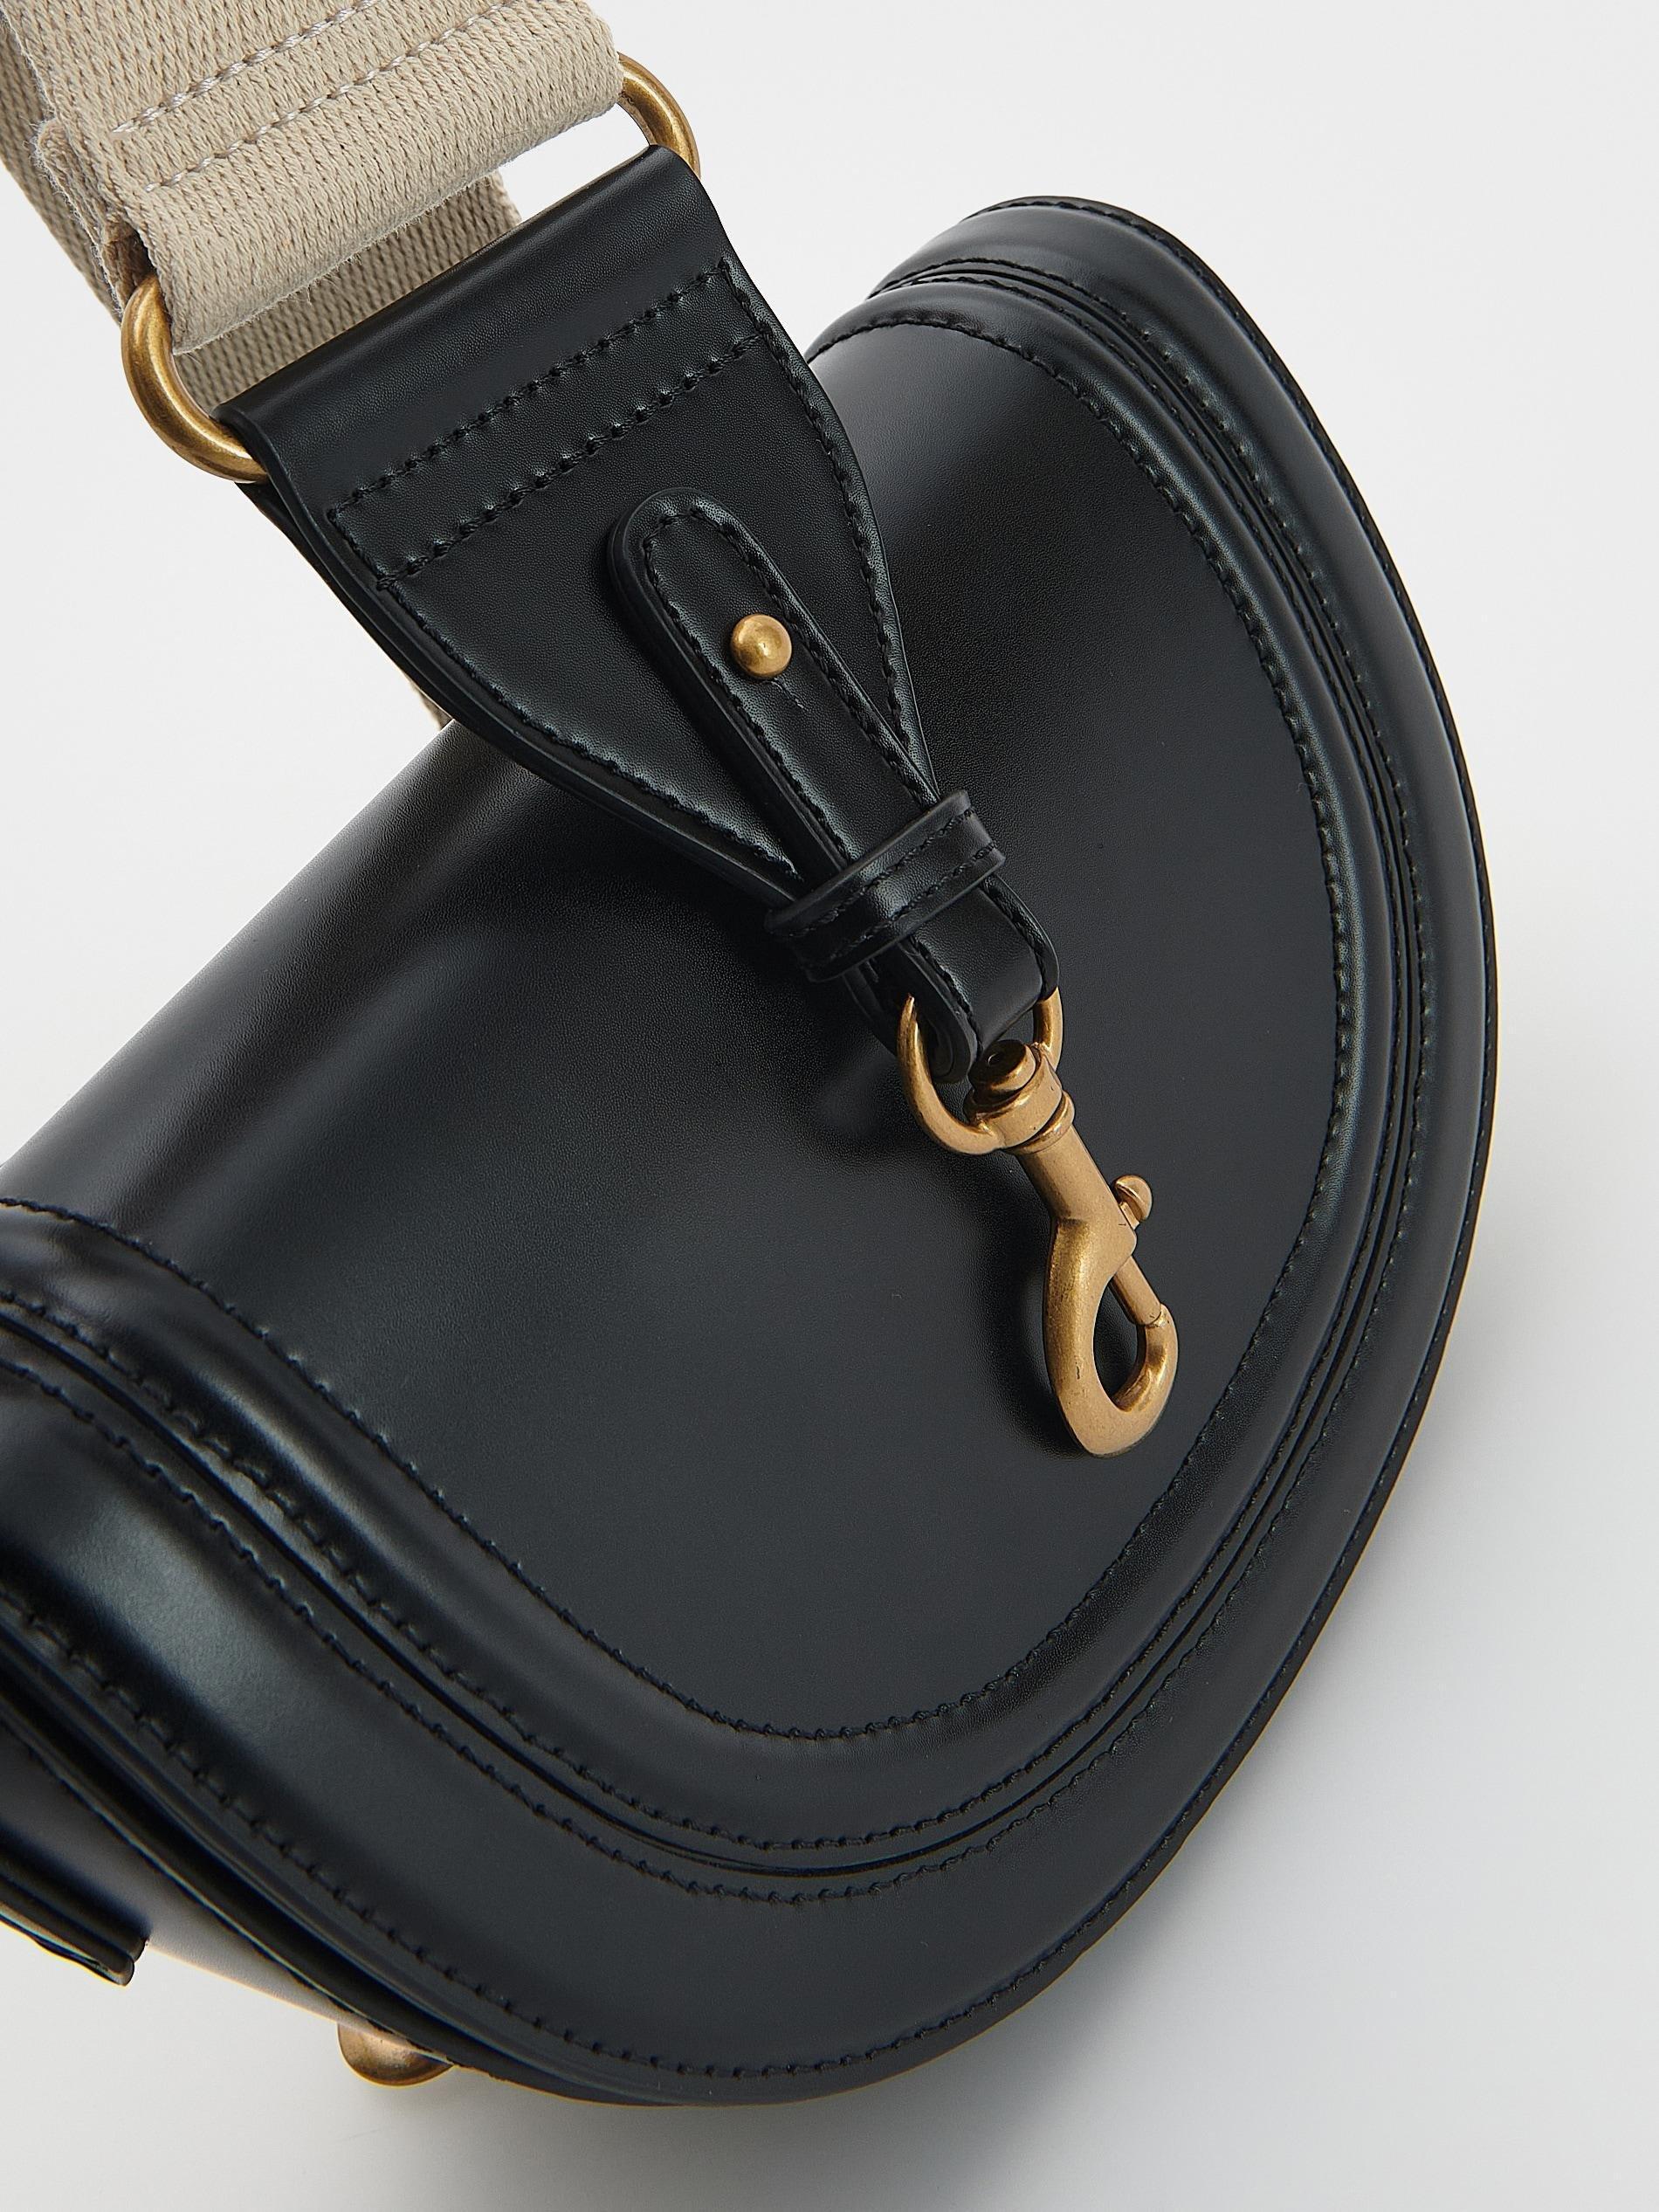 Reserved - Black Adjustable Handbag